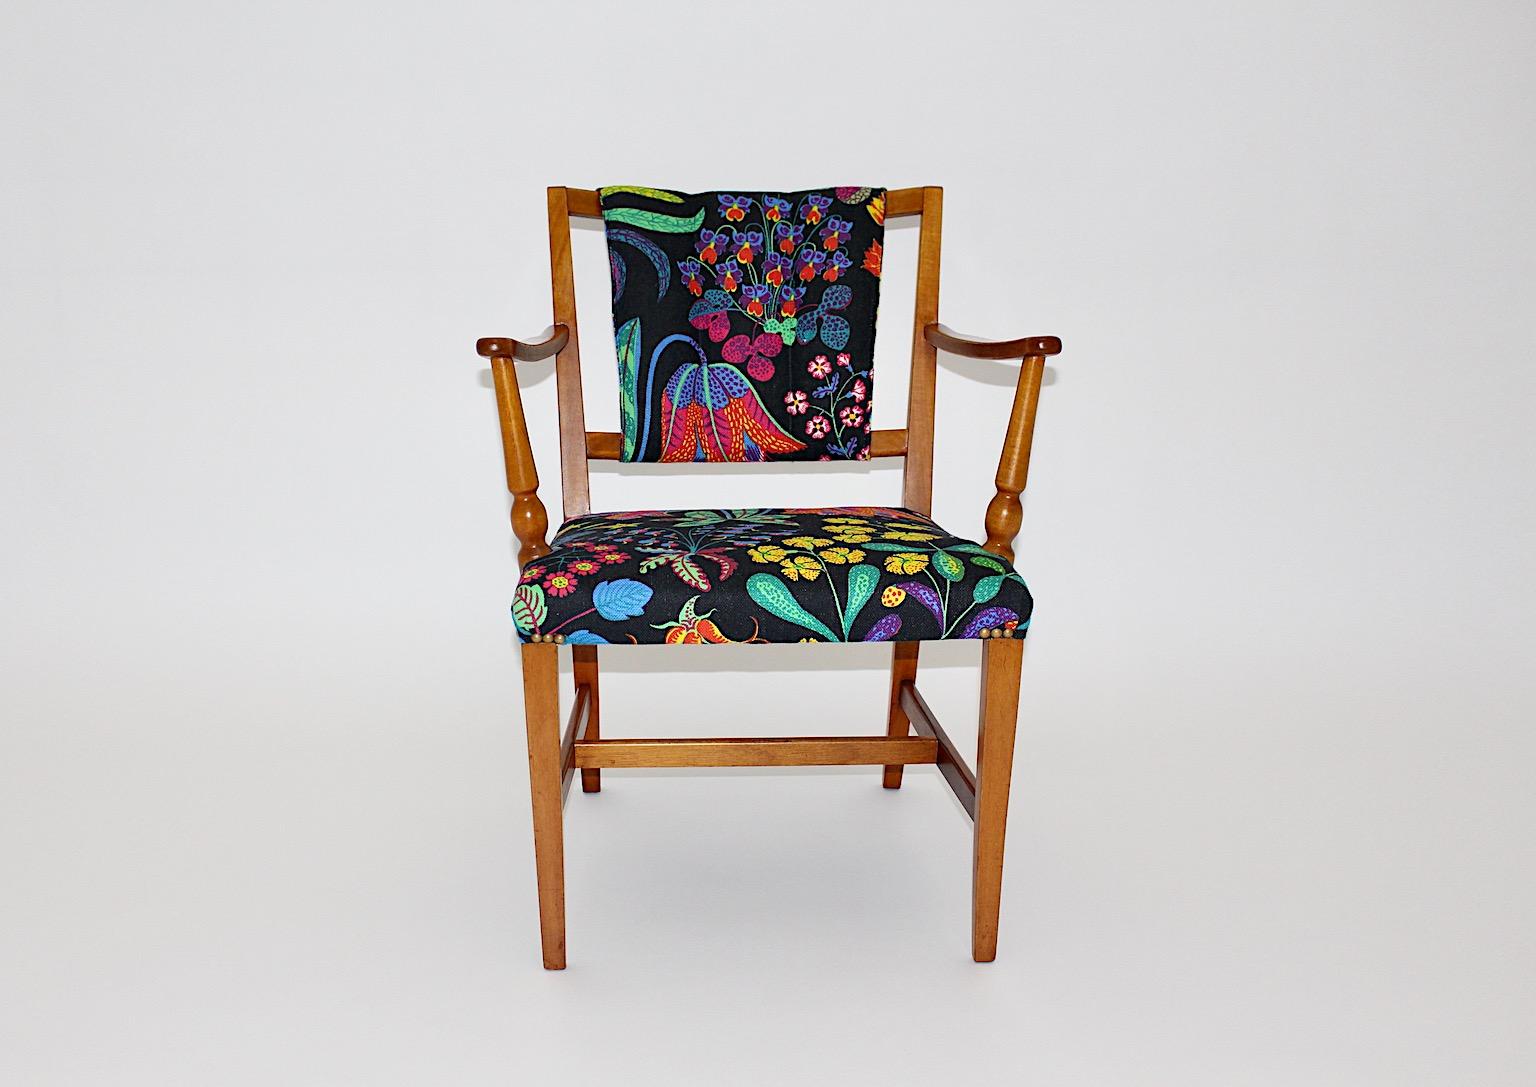 Chaise d'appoint ou fauteuil Josef Frank modèle n° 2067 en noyer et tissu pour Svenskt Tenn 1947, Suède.
Une fabuleuse chaise d'appoint ou chaise facile conçue par Josef Frank pour Svenskt Tenn vers 1948, avec une belle structure en noyer blond, en